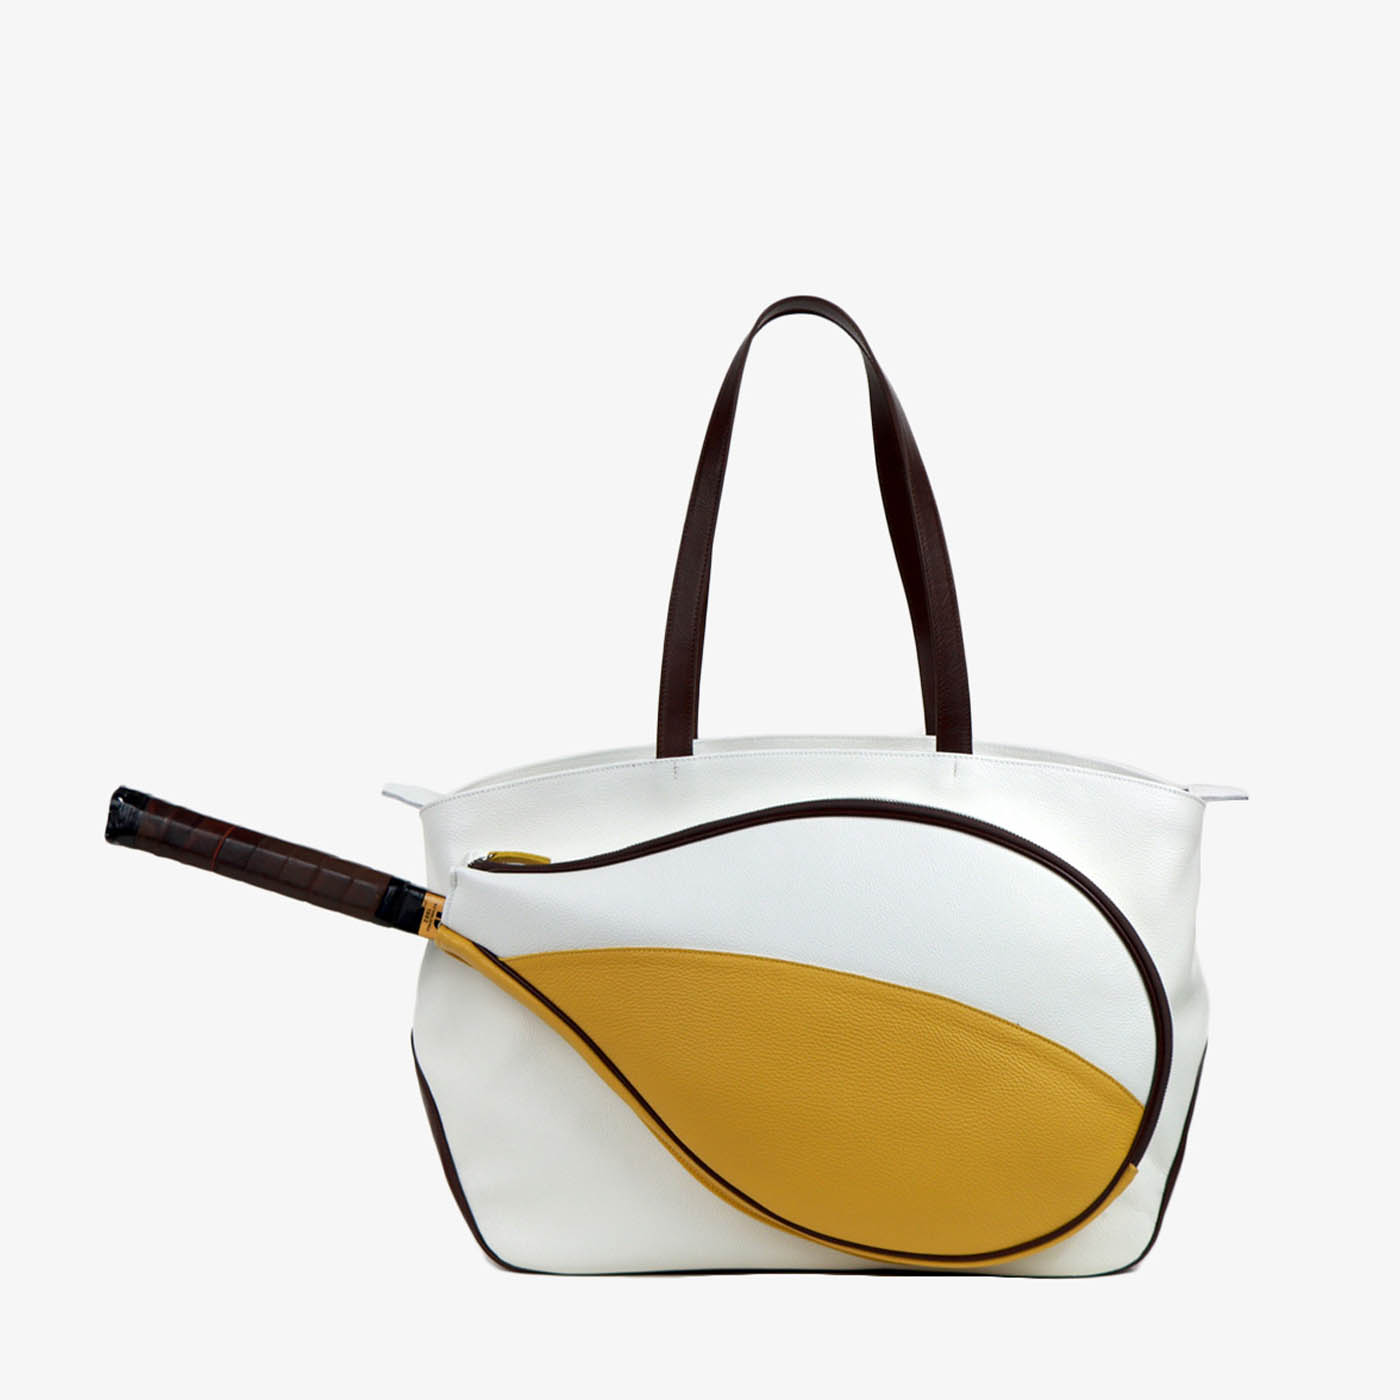 Bolsa de deporte blanca/amarilla/marrón con bolsillo en forma de raqueta de tenis - Vista alternativa 2